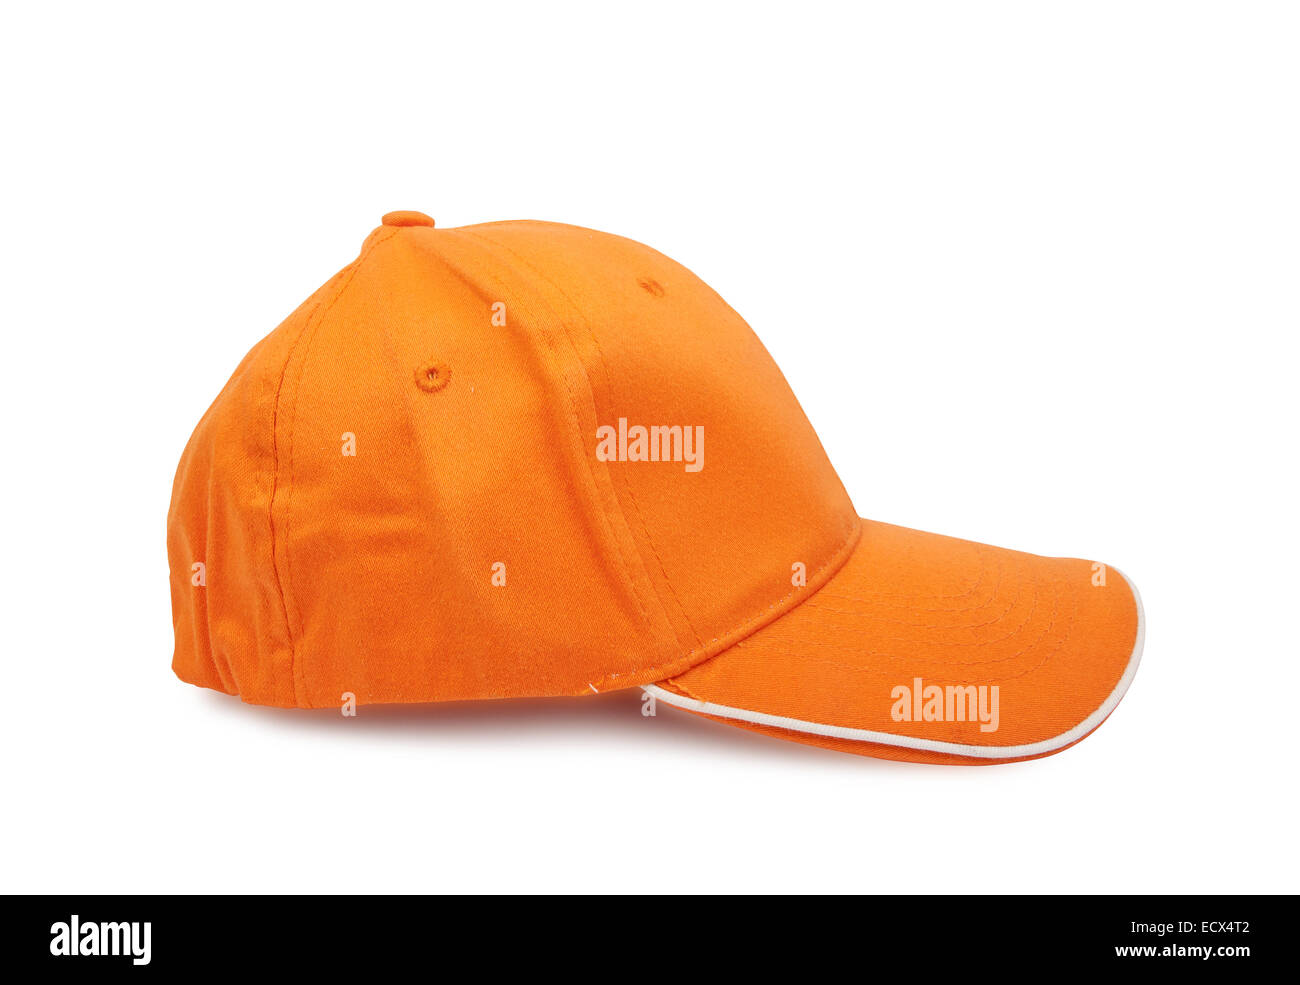 orange baseball cap isolated on white background, studio shot Stock Photo